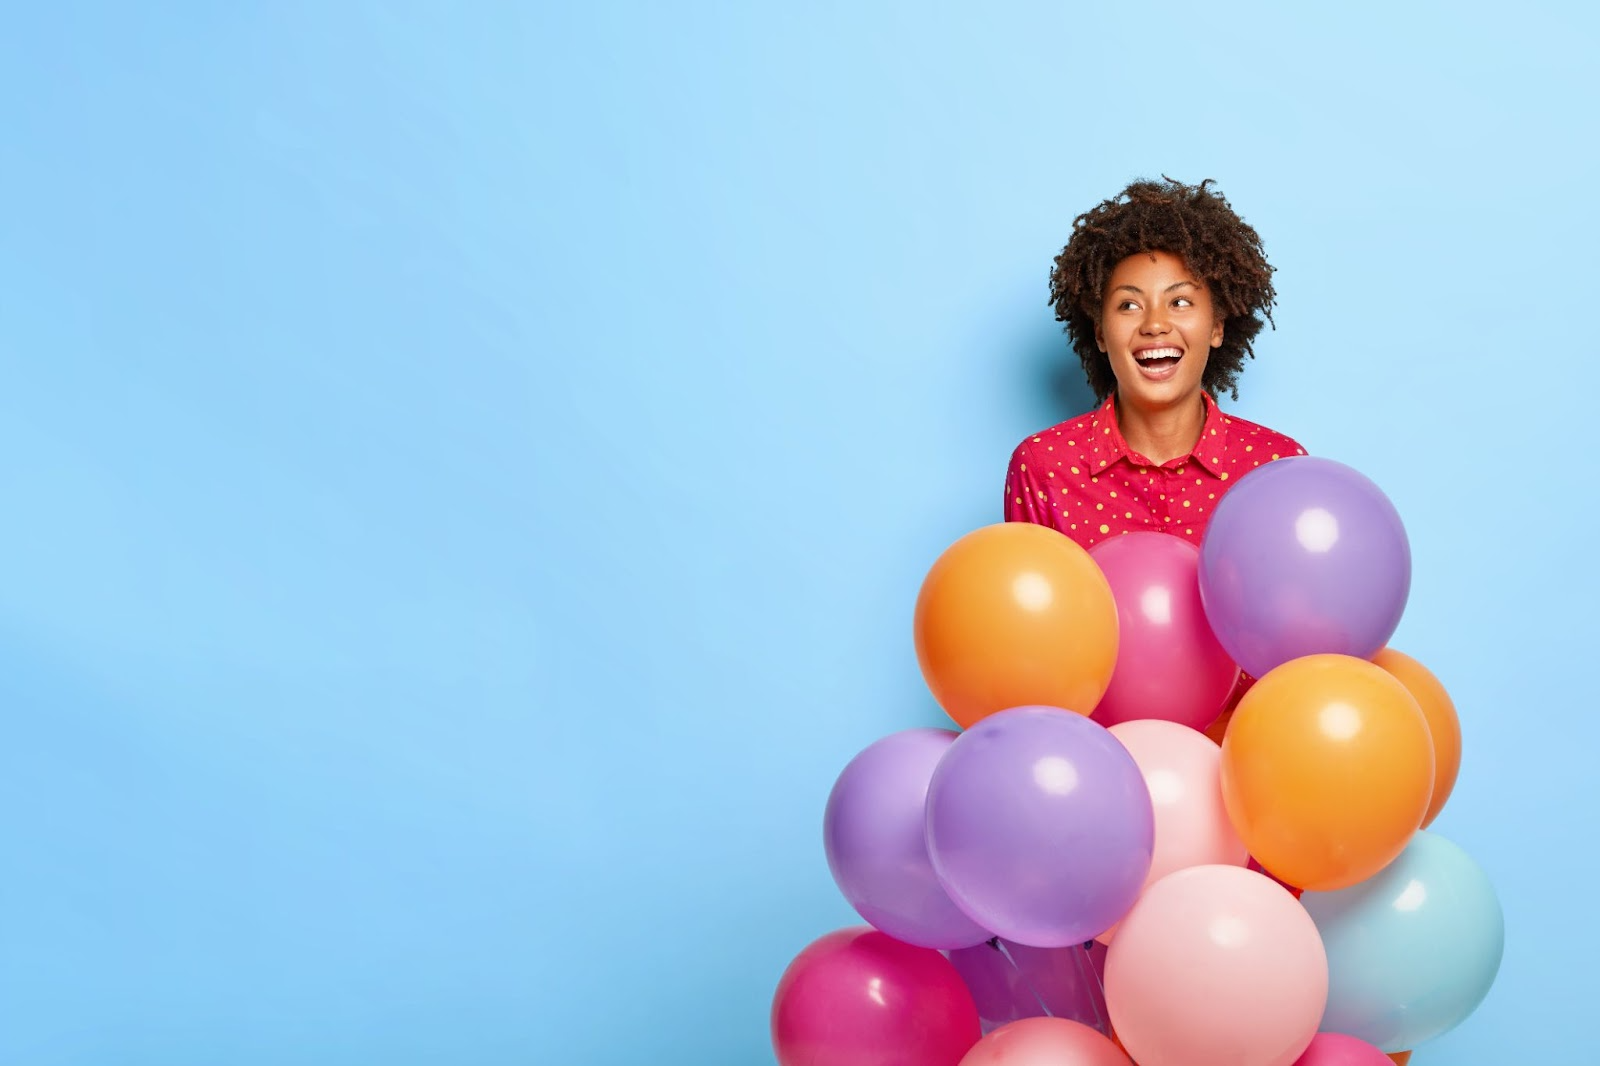 Como utilizar balões personalizados para criar uma experiência imersiva?